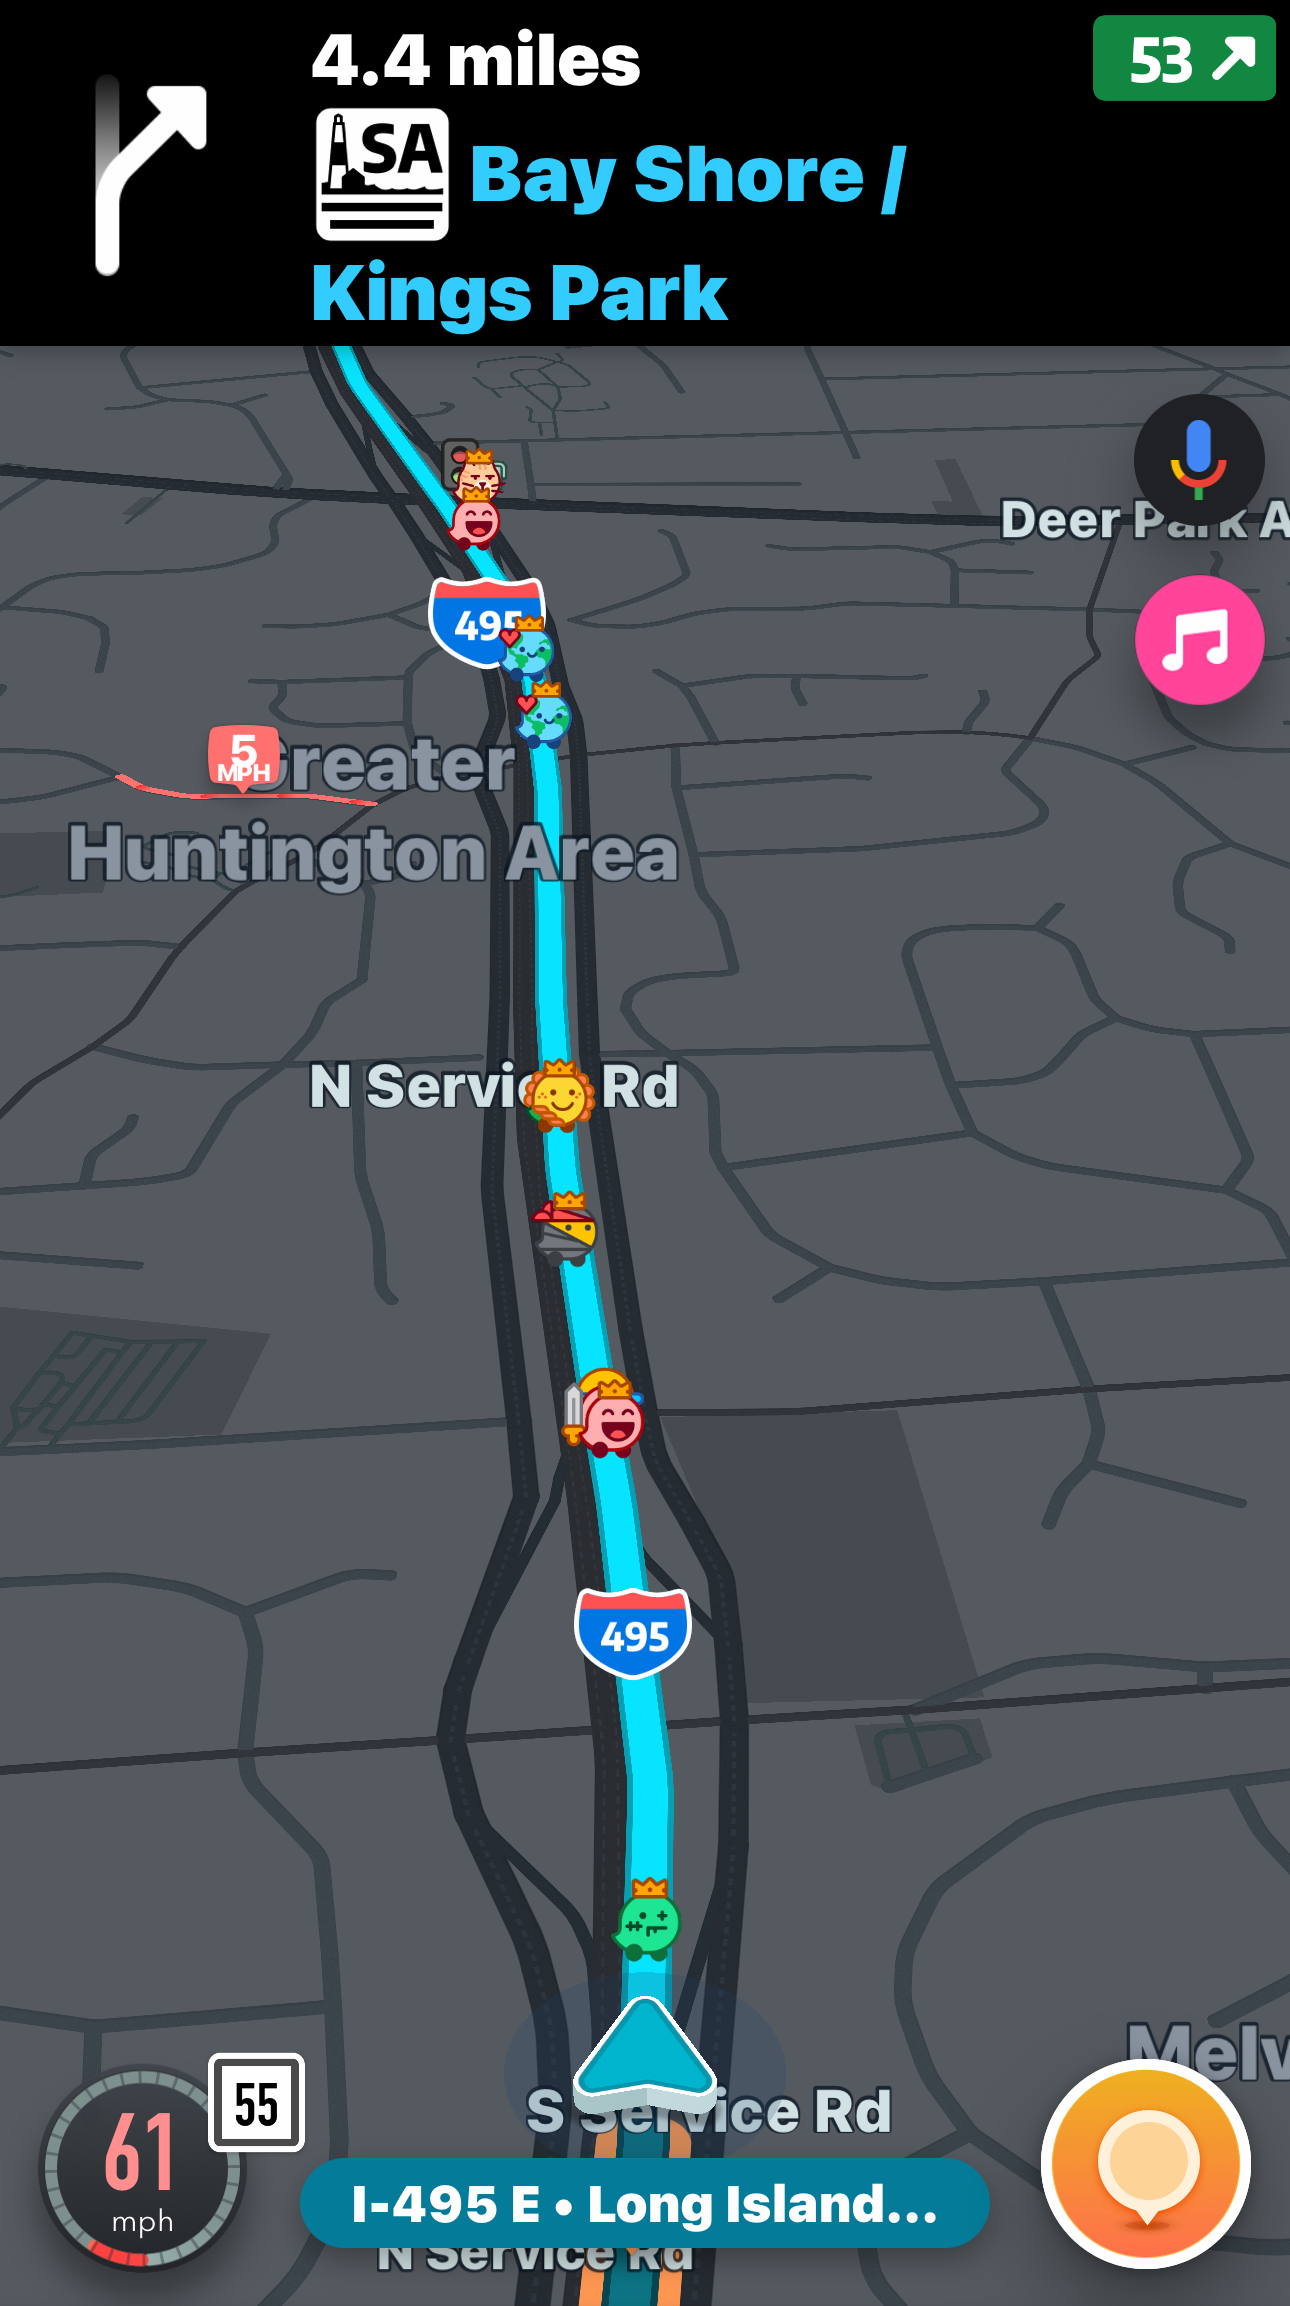 How the Waze Navigation App delivers bad interface design.